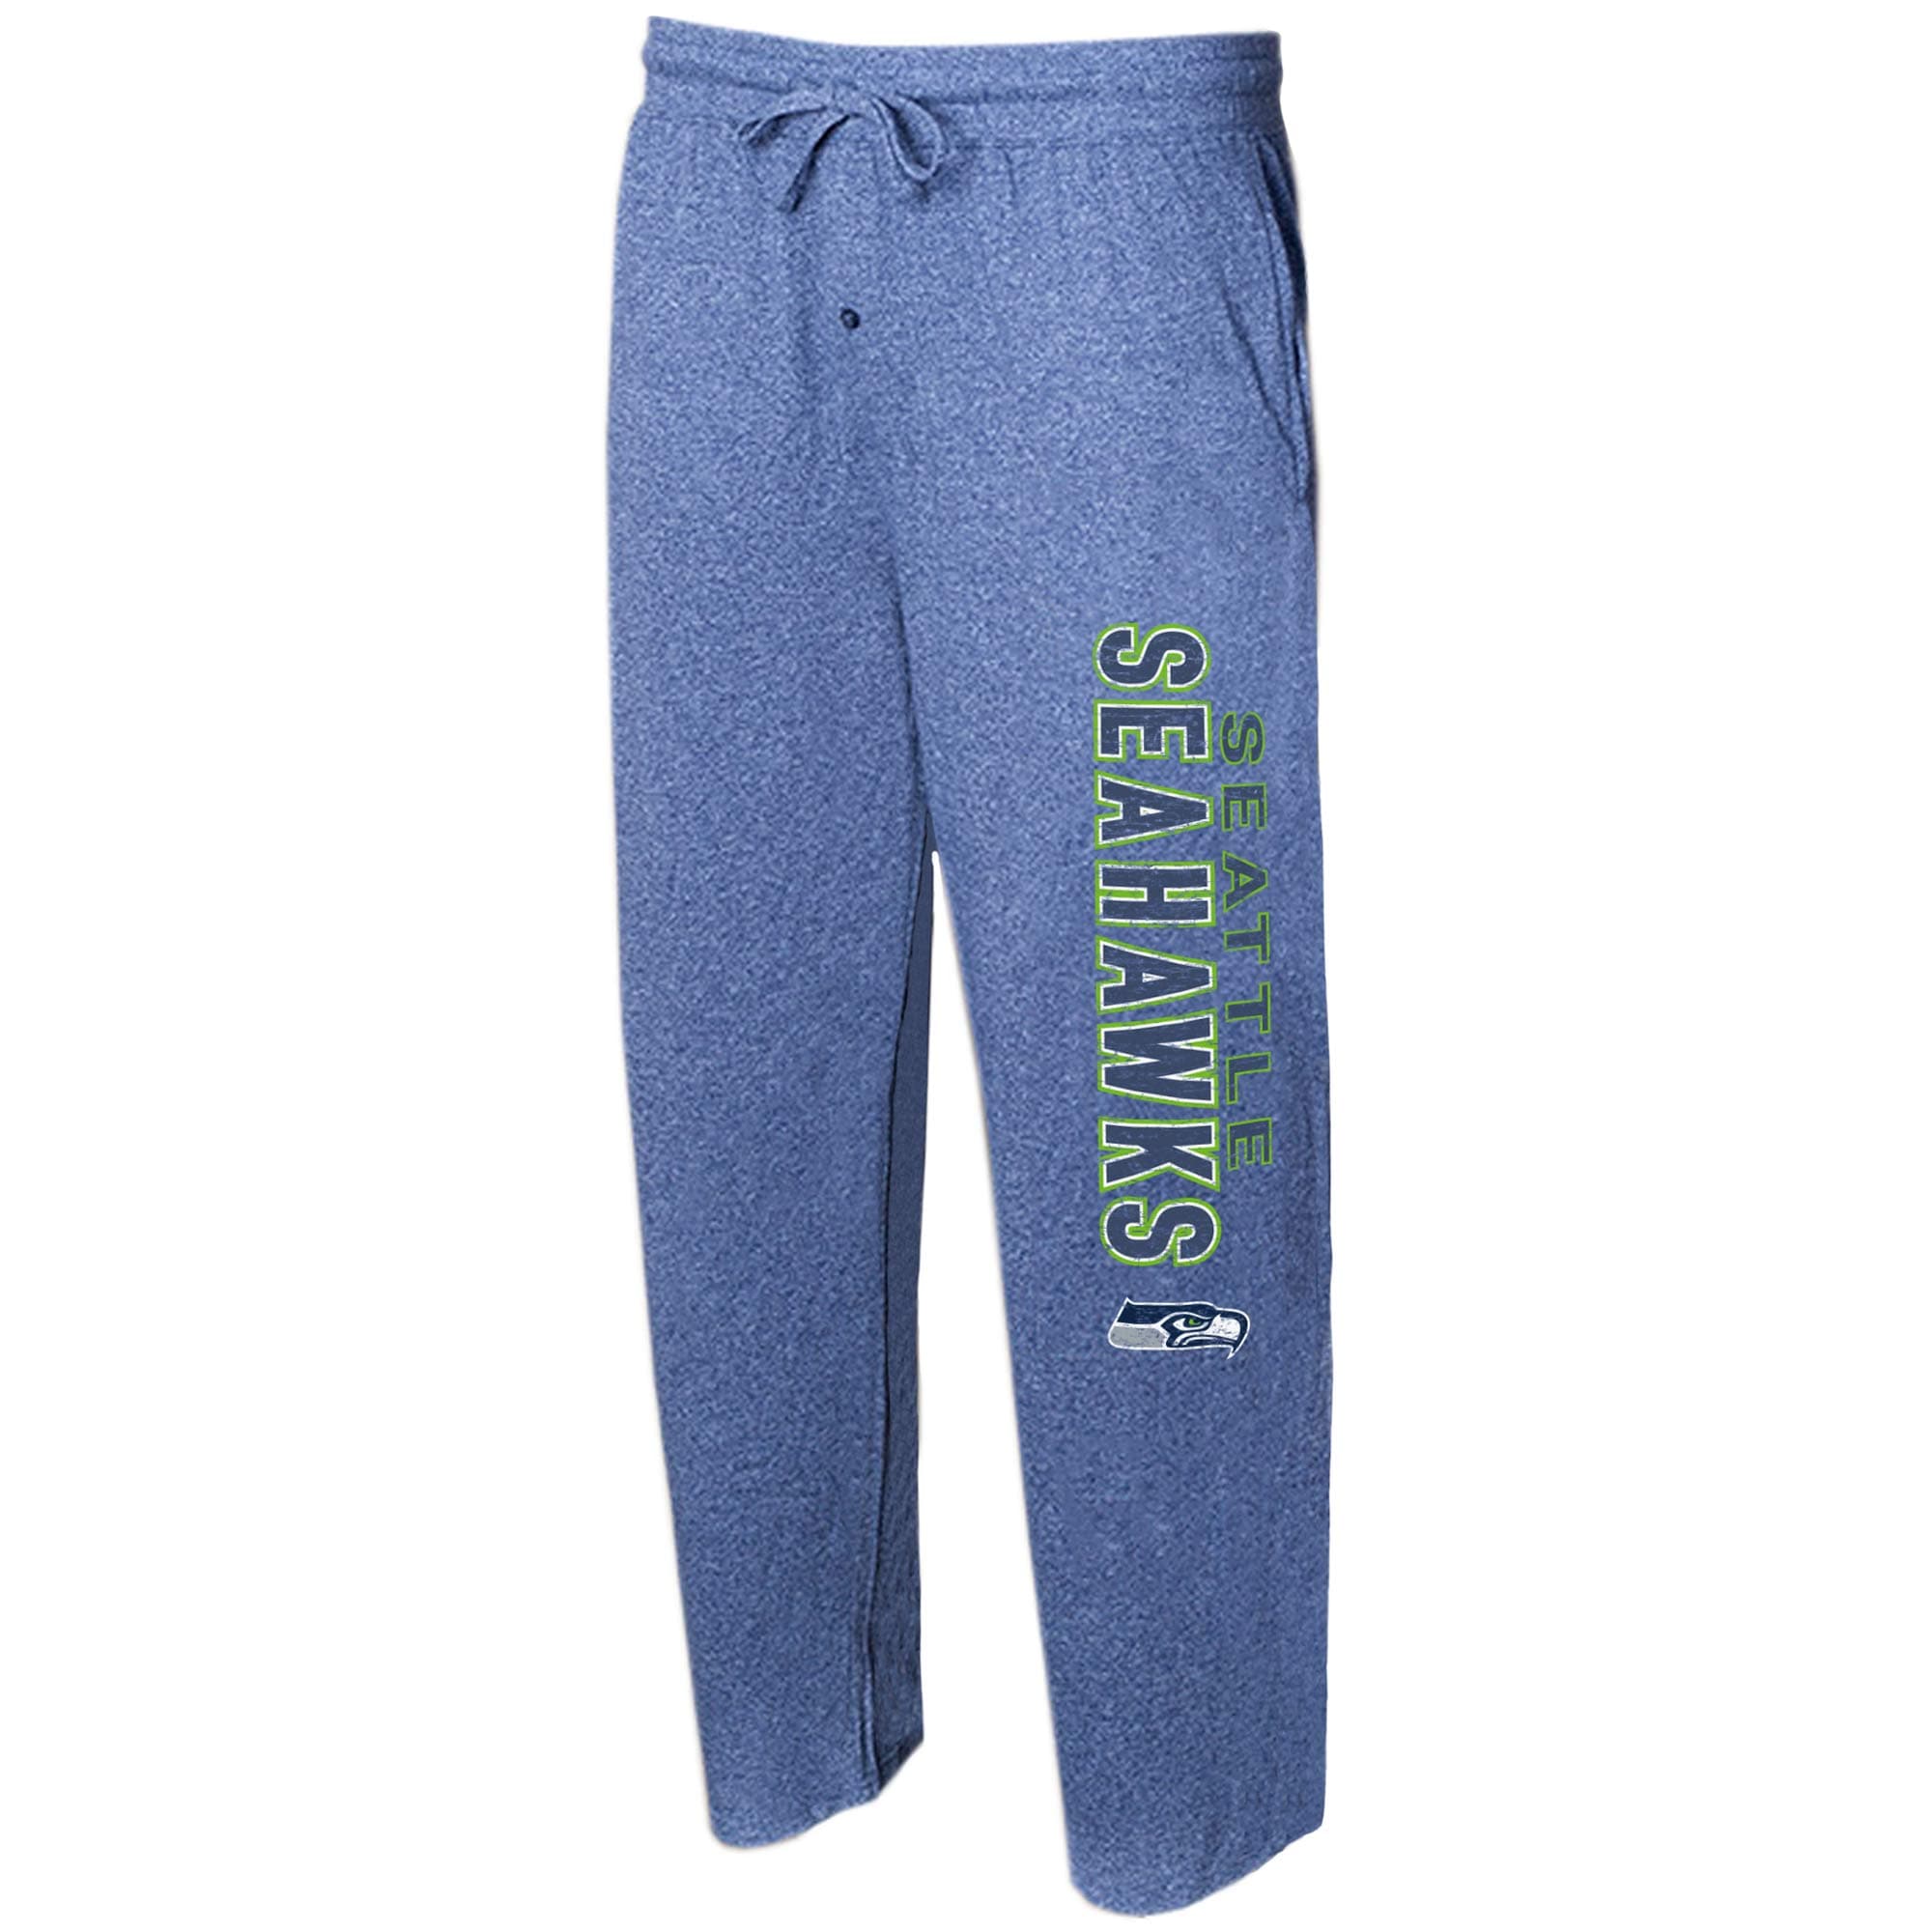 Concepts Sport Seahawks College Quest Knit Lounge Pants - Men's